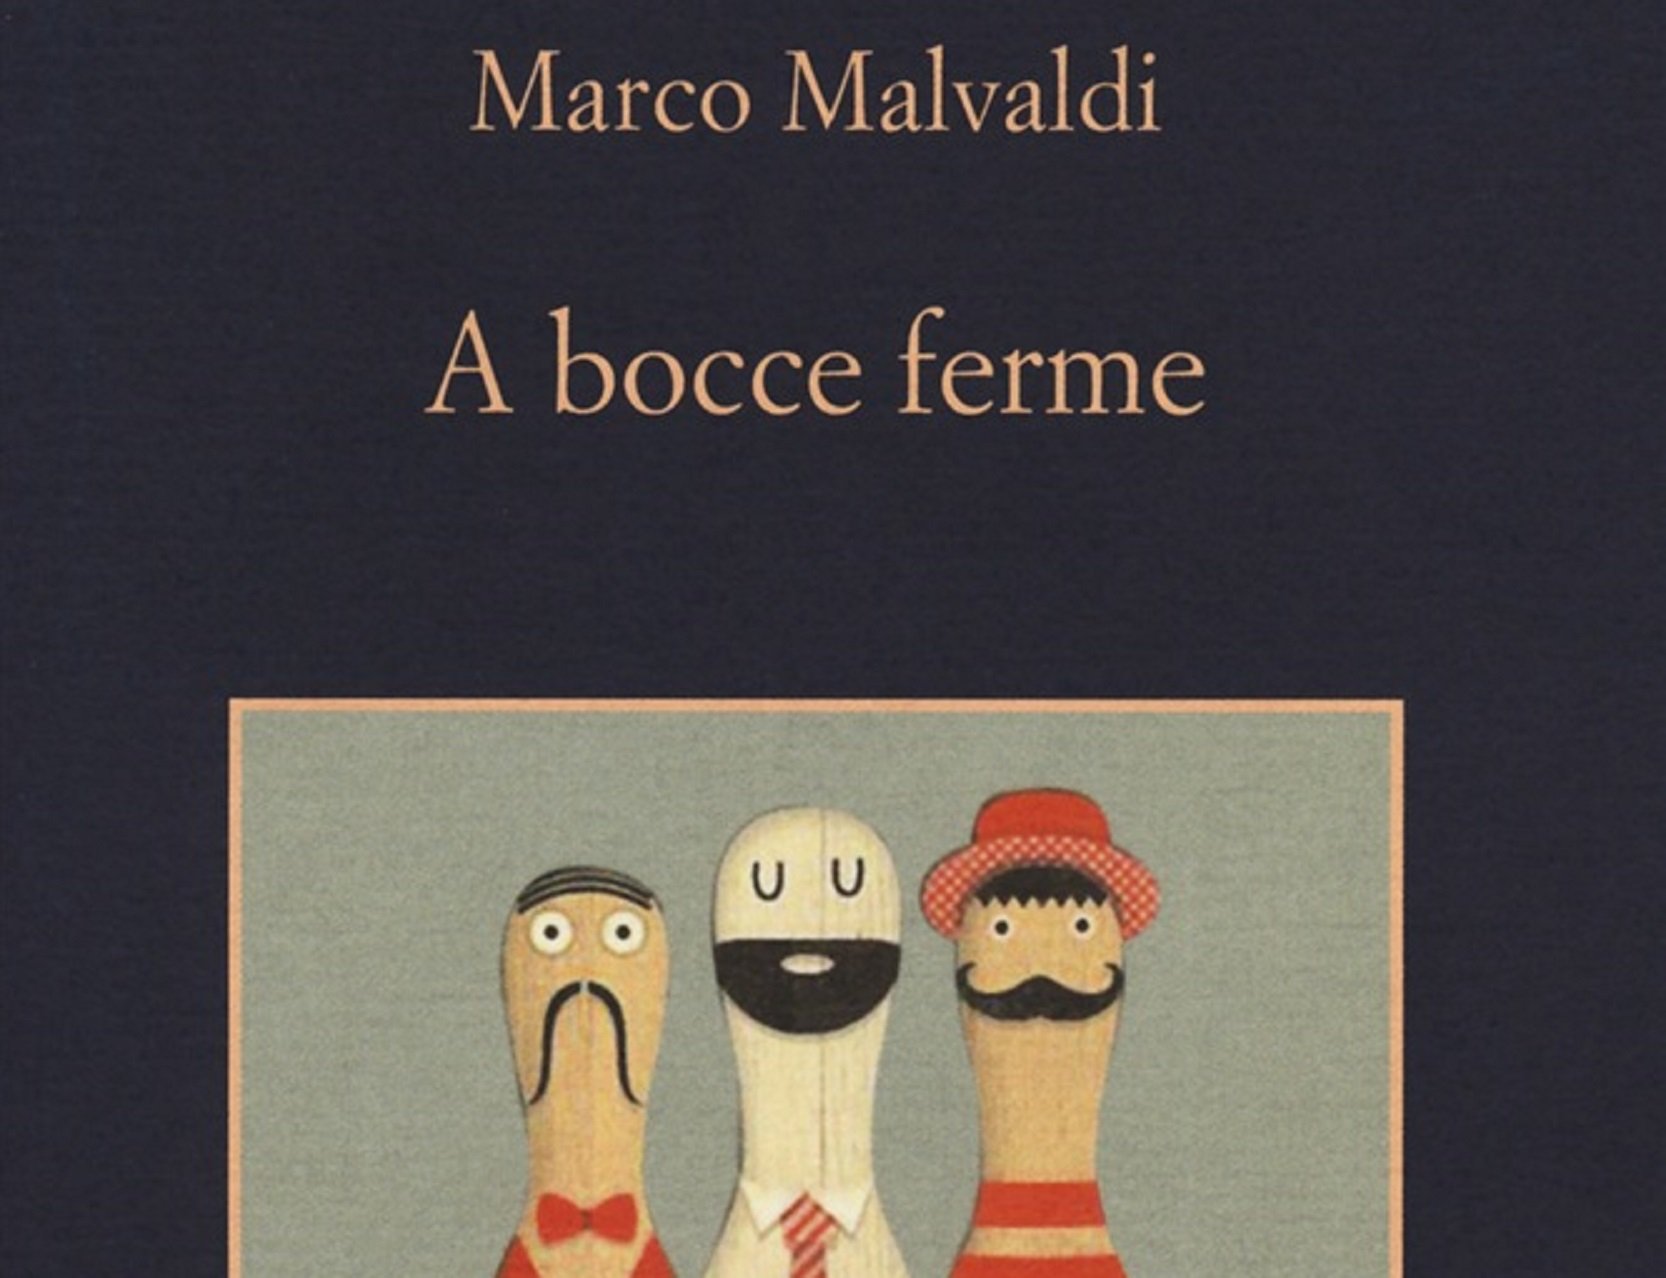 “A bocce ferme” – Marco Malvaldi